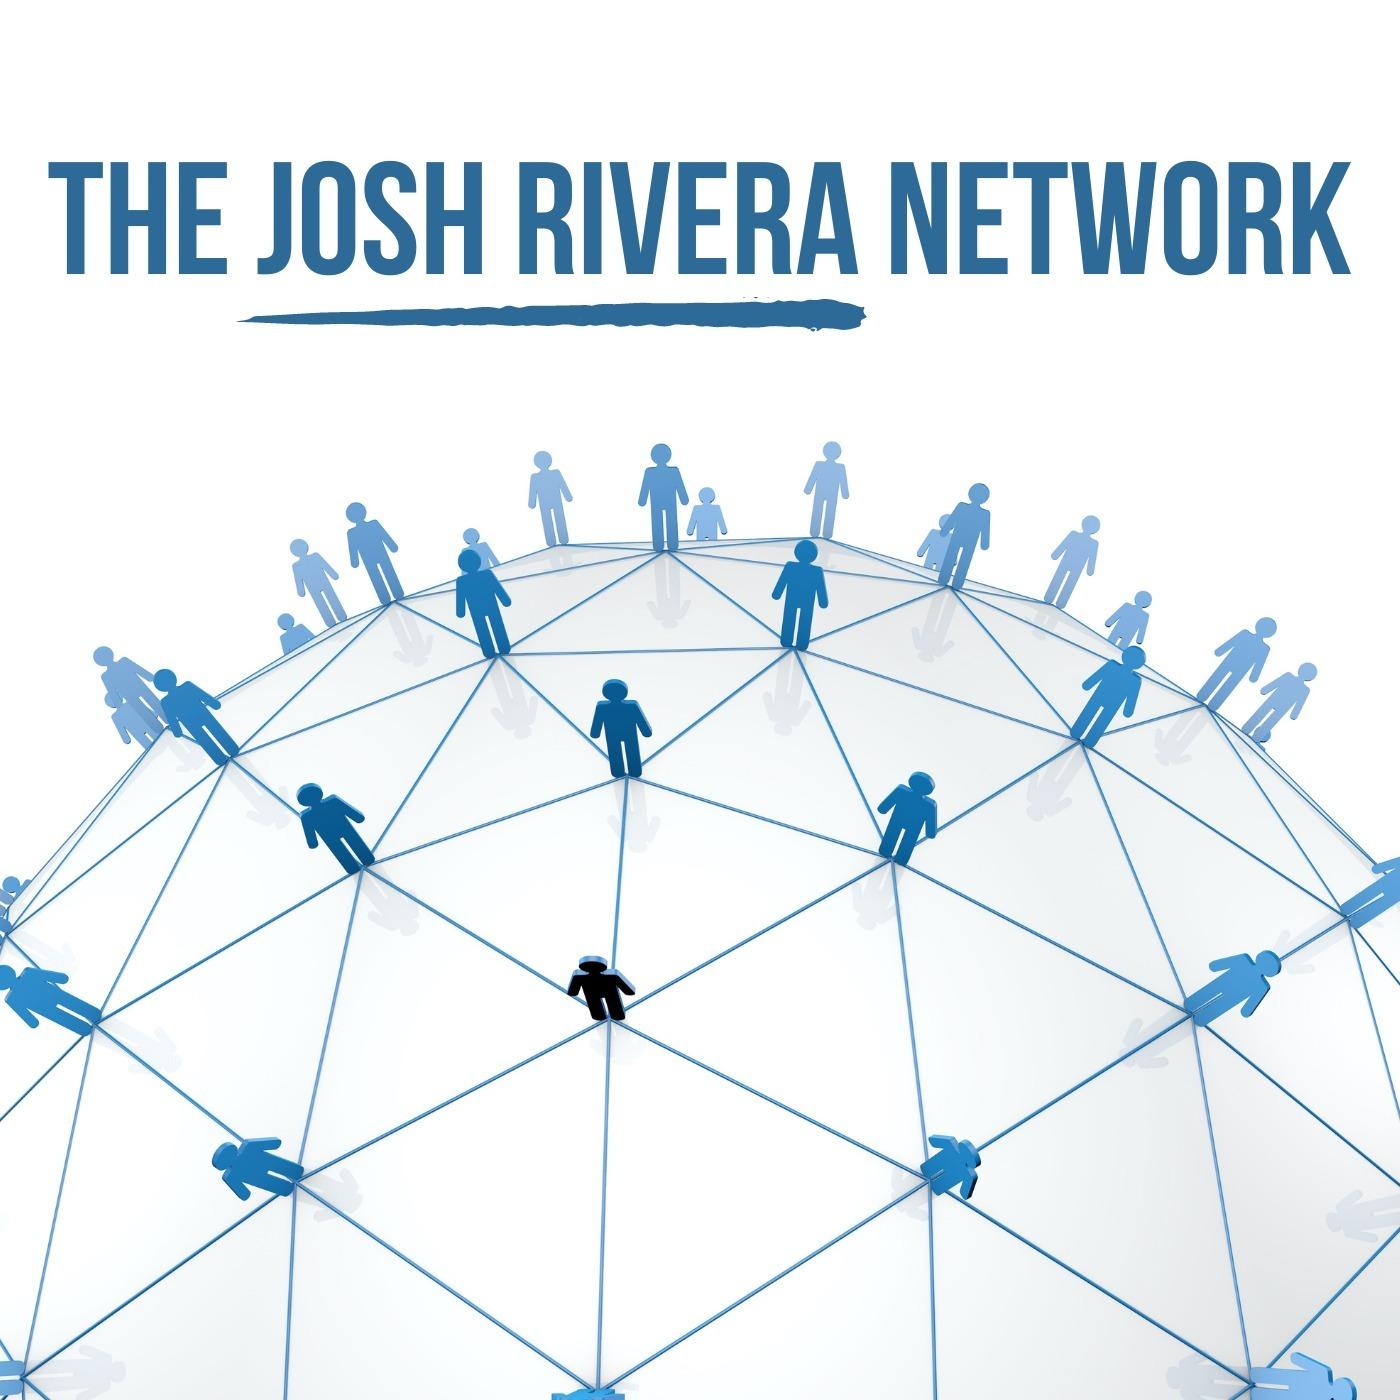 The Josh Rivera Network